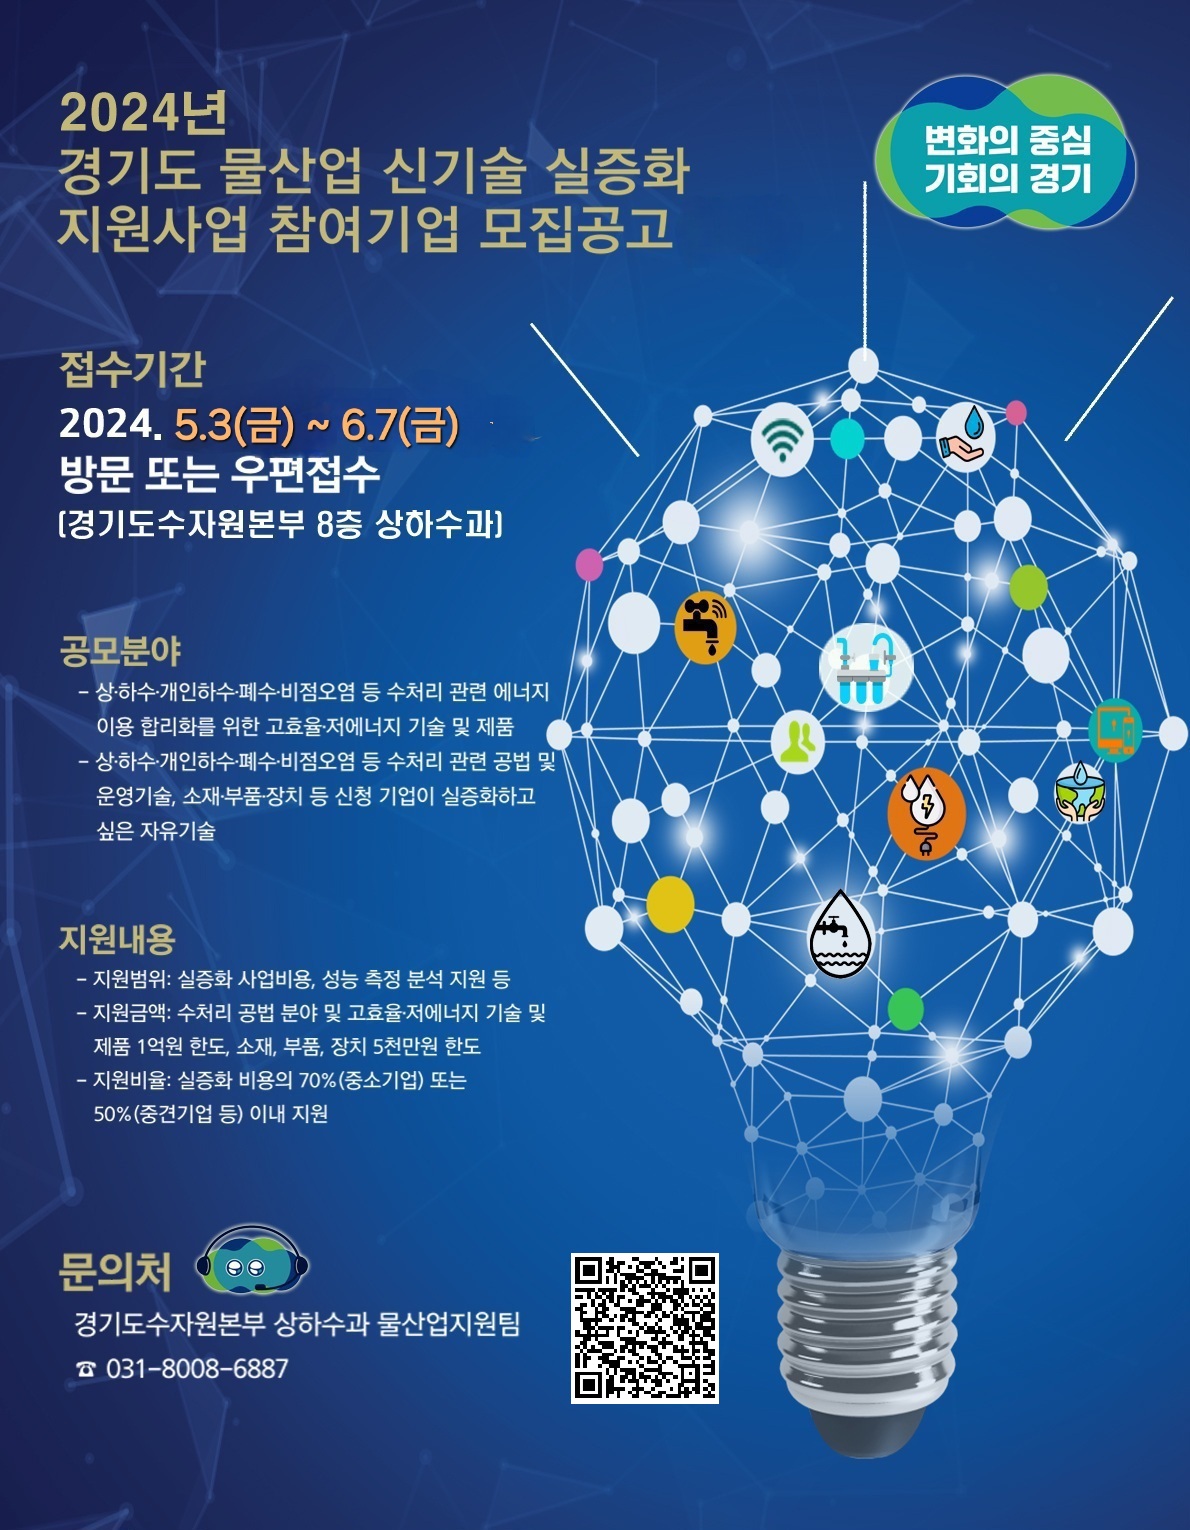 경기도 물산업 신기술 실증화 지원사업 참여기업 모집(2차) 연장공고